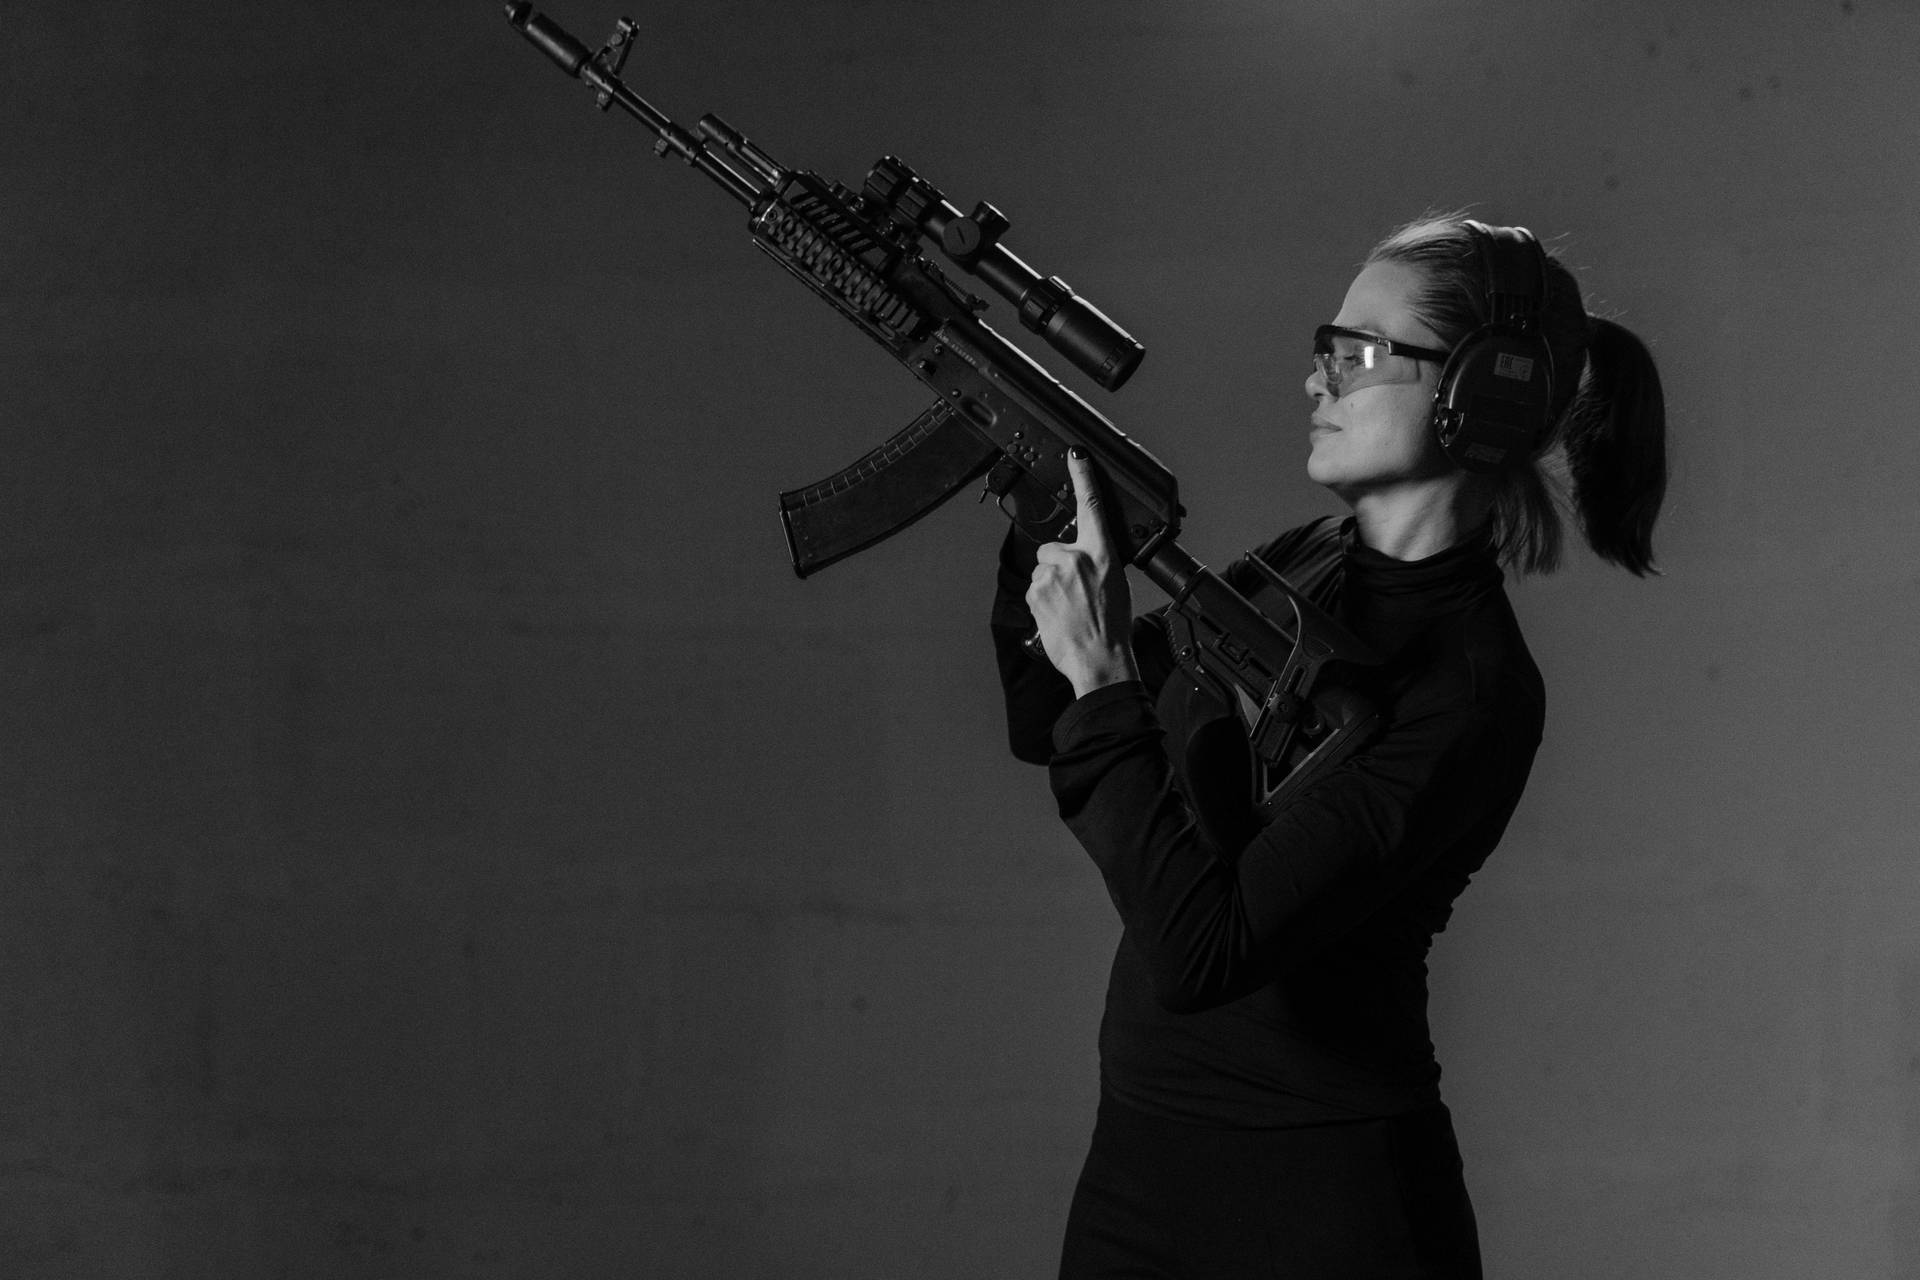 Brave Female Sniper on Duty Wallpaper